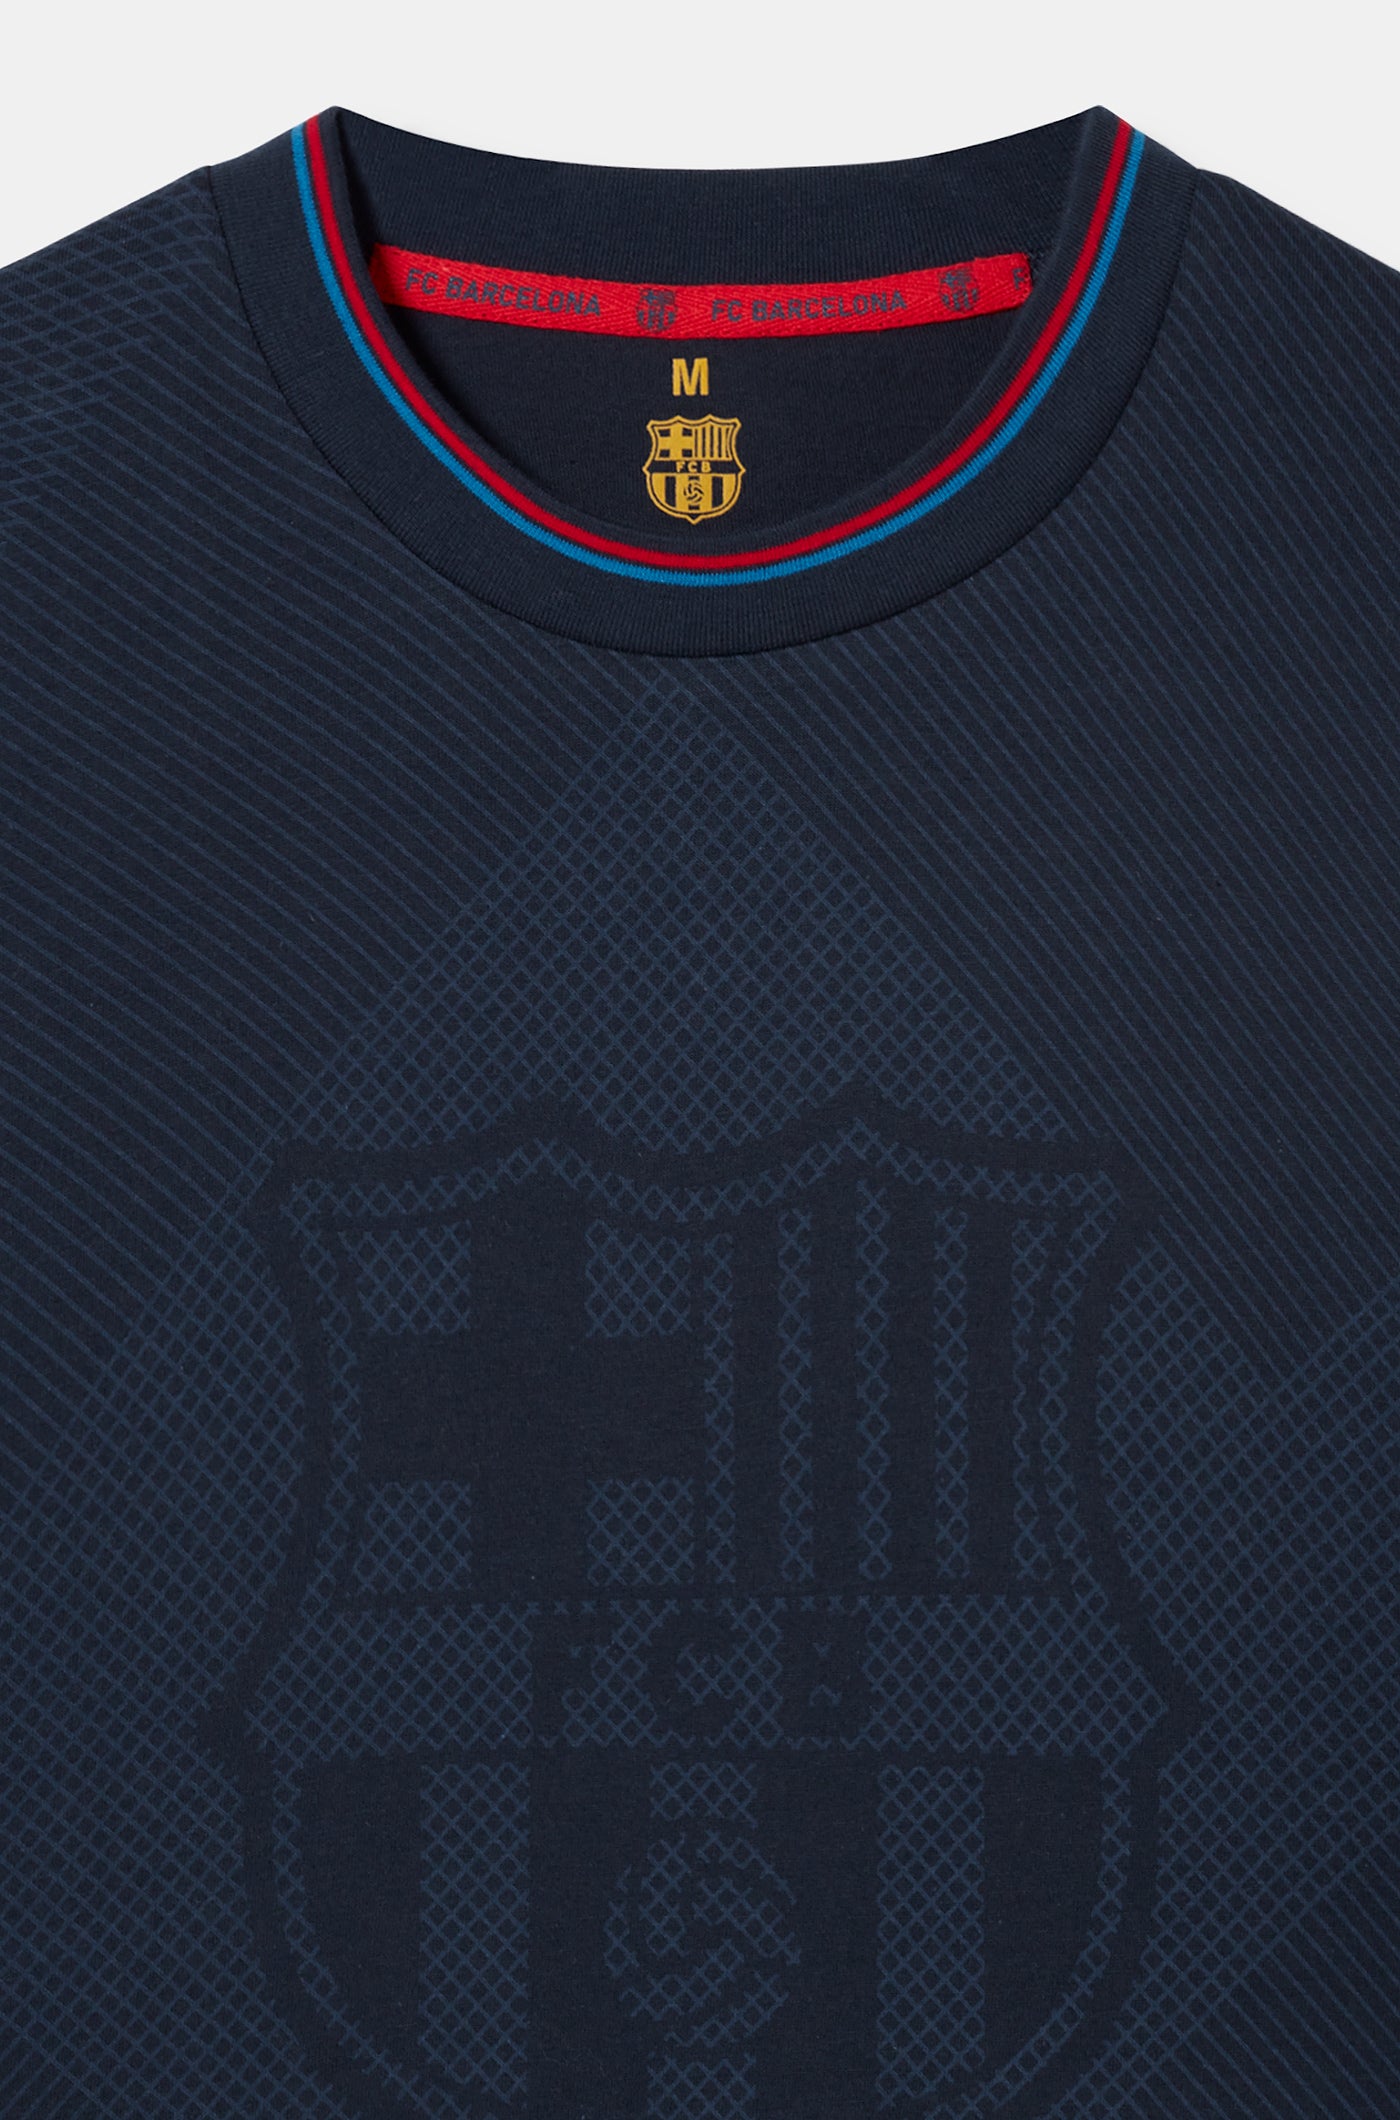 Pijama del FC Barcelona amb escut blau marí